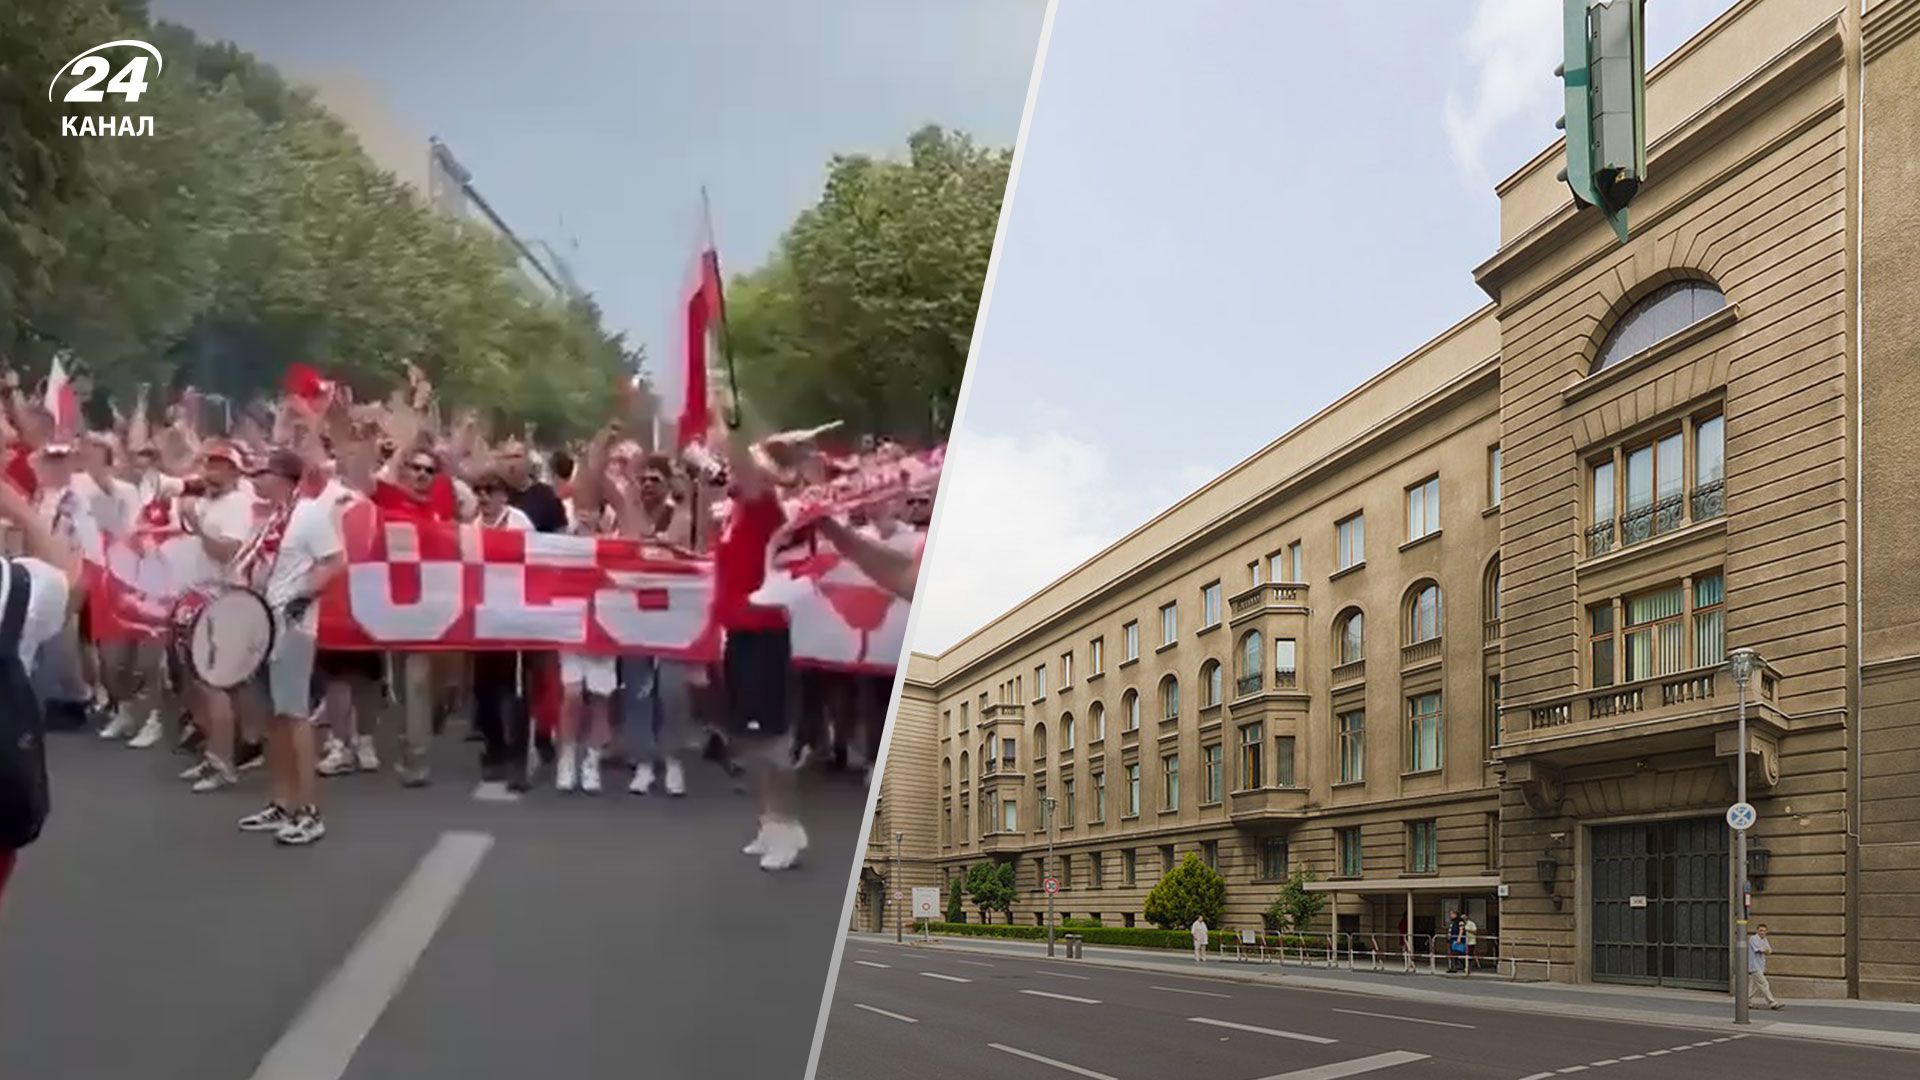 "Руска ку**а", - польские фаны пришли "с песней" под российское посольство в Берлине - 24 Канал